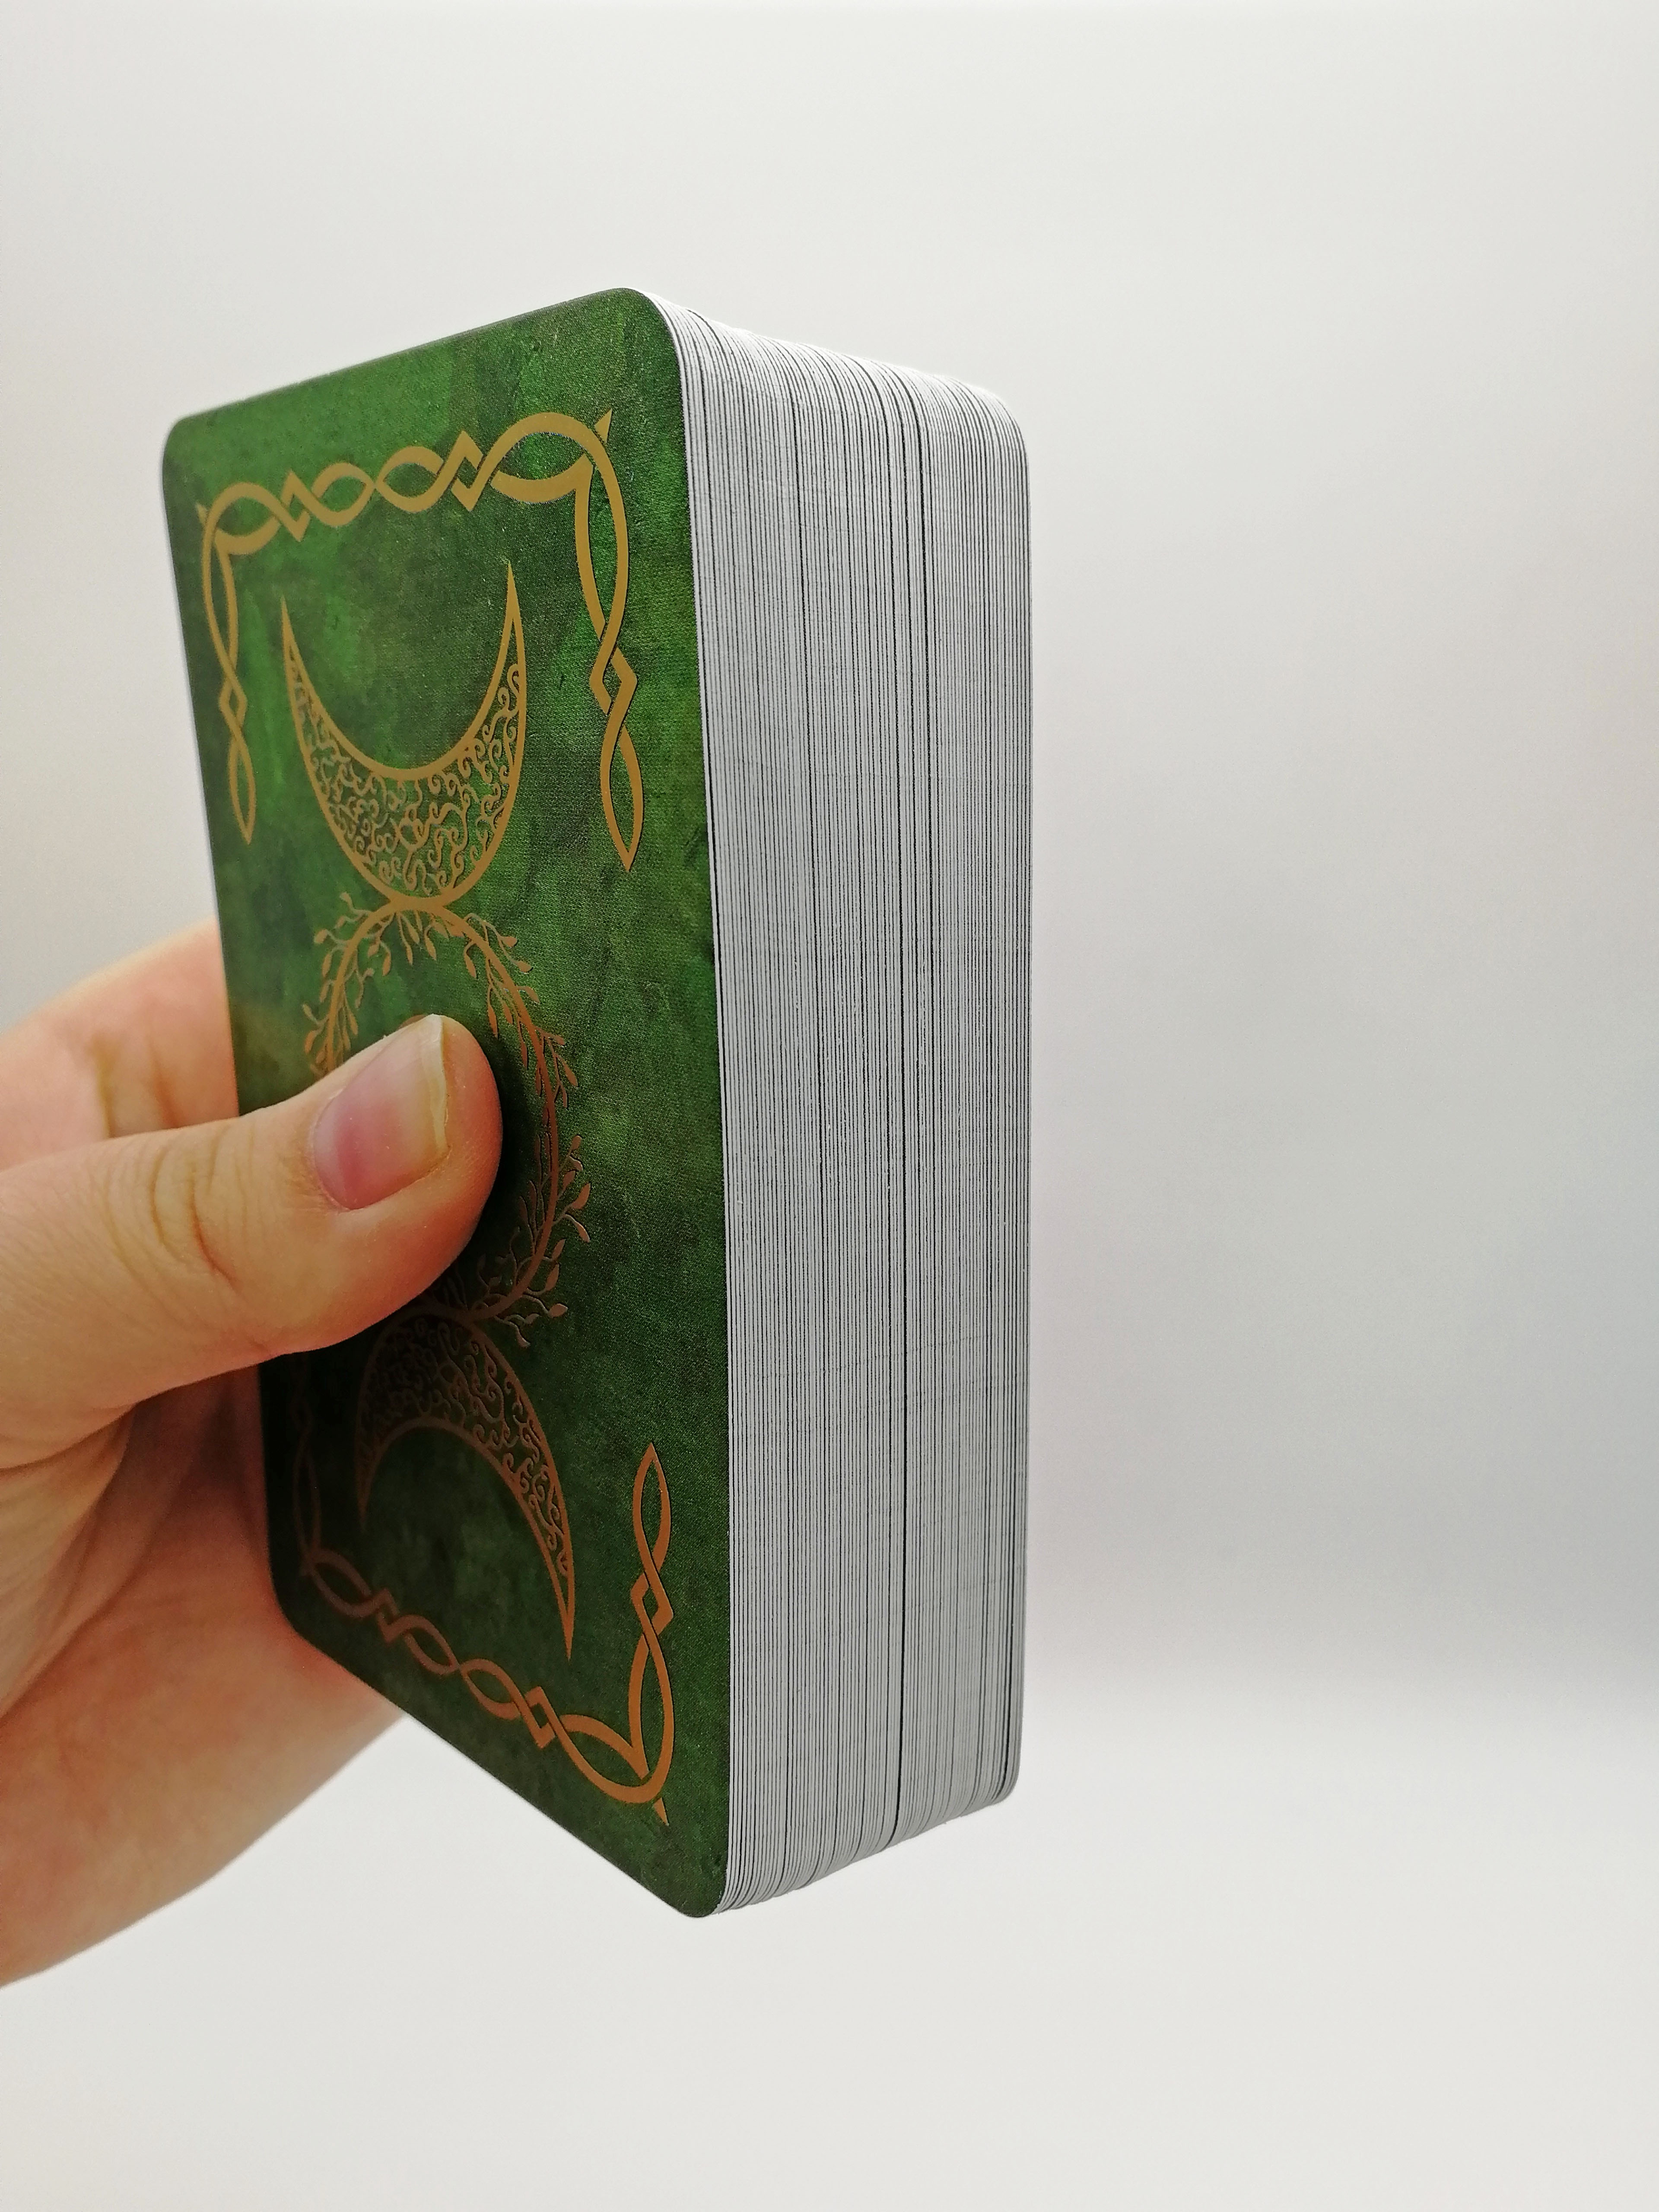 Гадальные карты Таро Викка Wicca Tarot с книгой инструкцией для гадания %% 